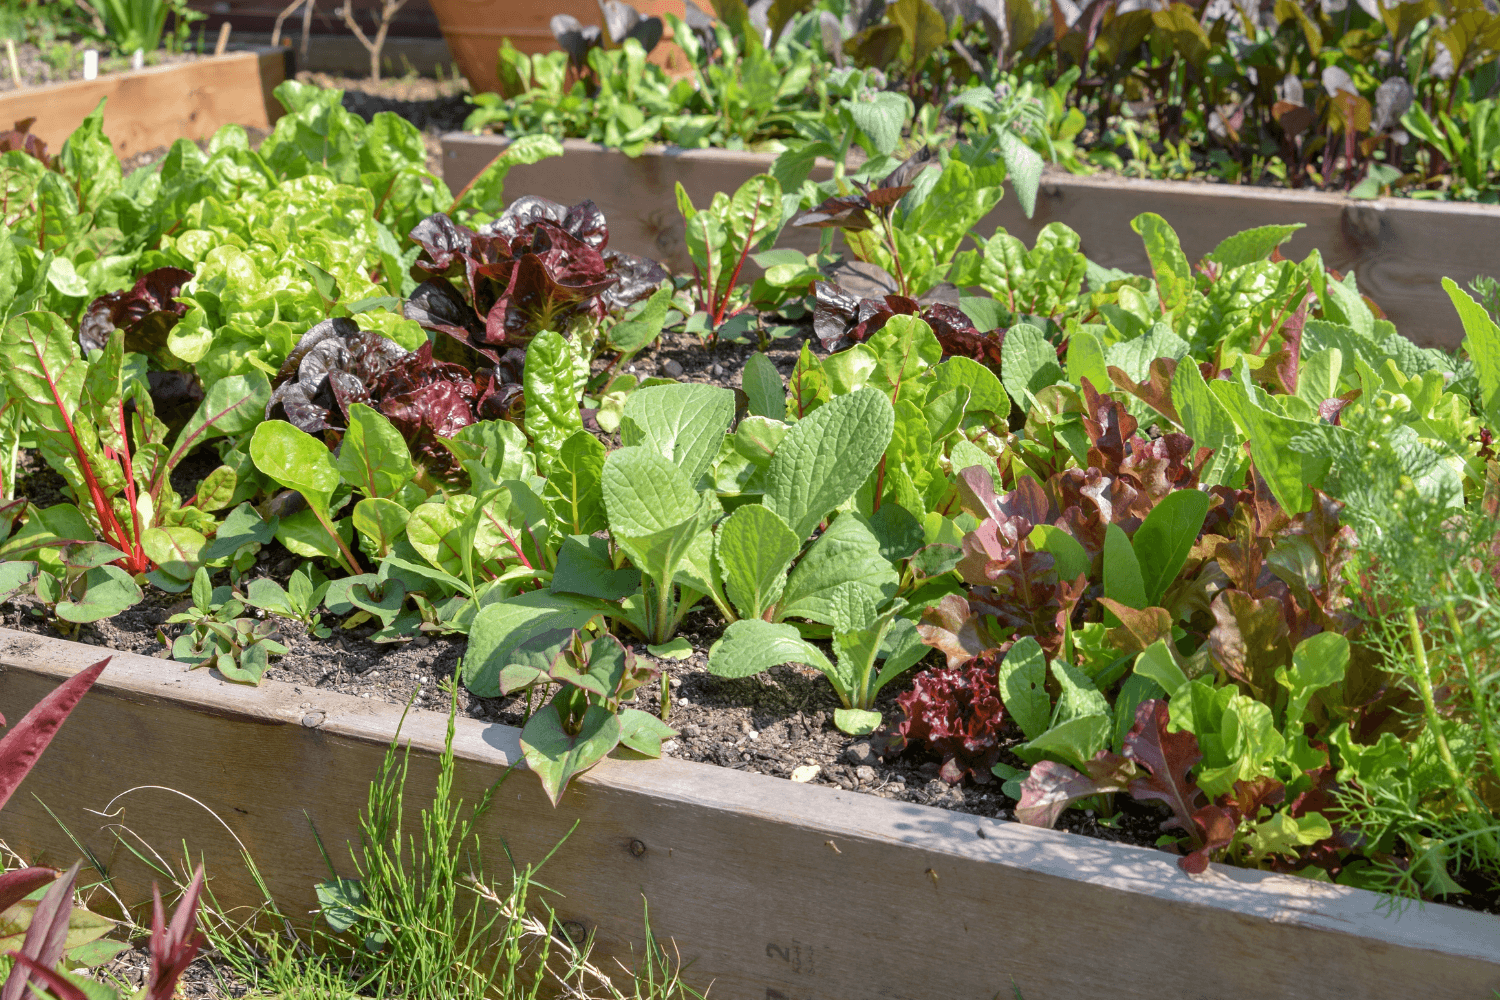 dyrke i pallekarm - ulike typer salat